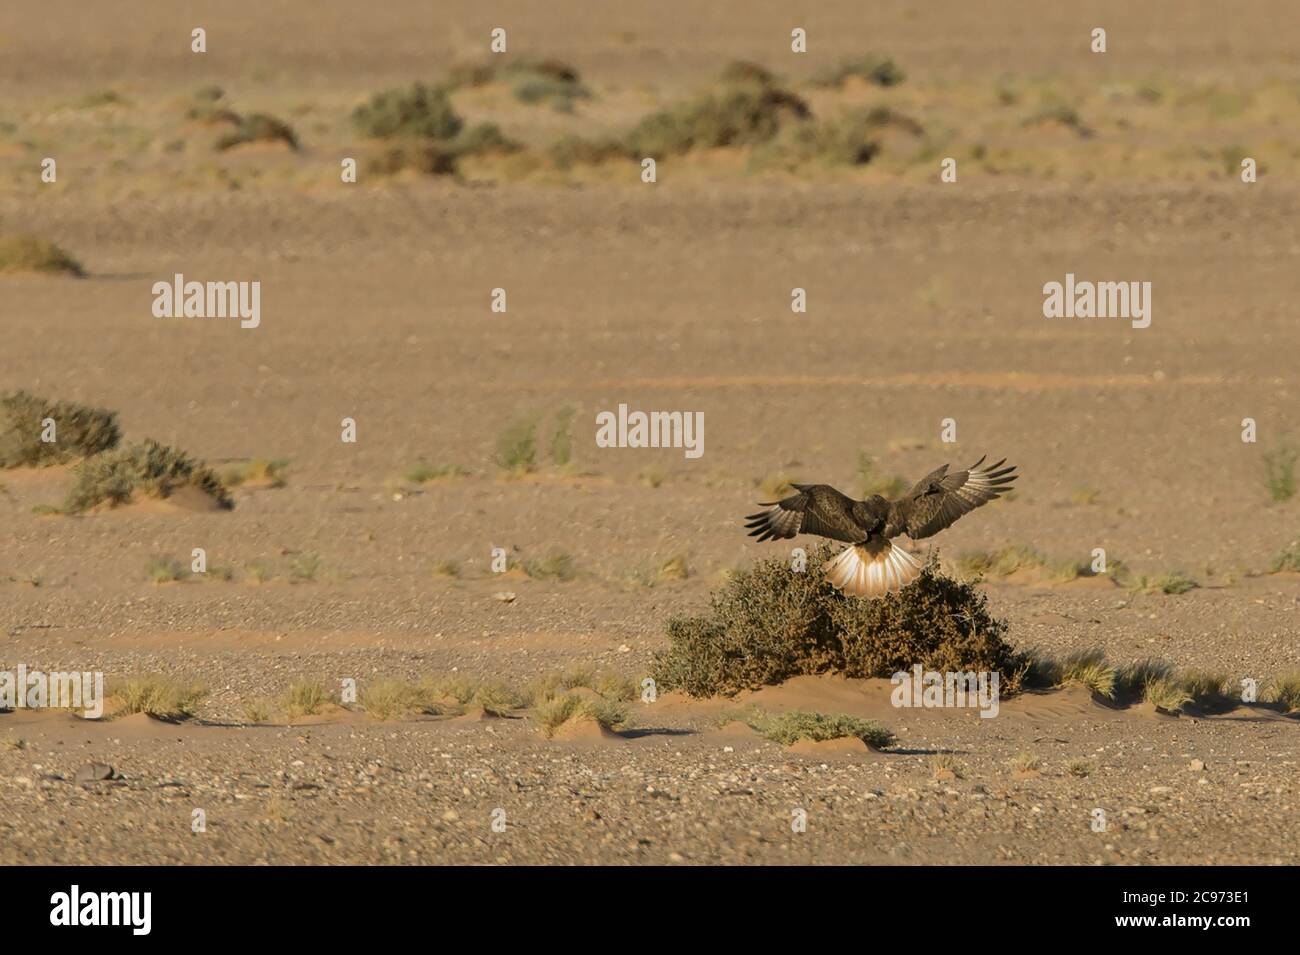 Atlas long-legged buzzard (Buteo rufinus cirtensis, Buteo cirtensis), landing on low scrub in desert, Morocco Stock Photo